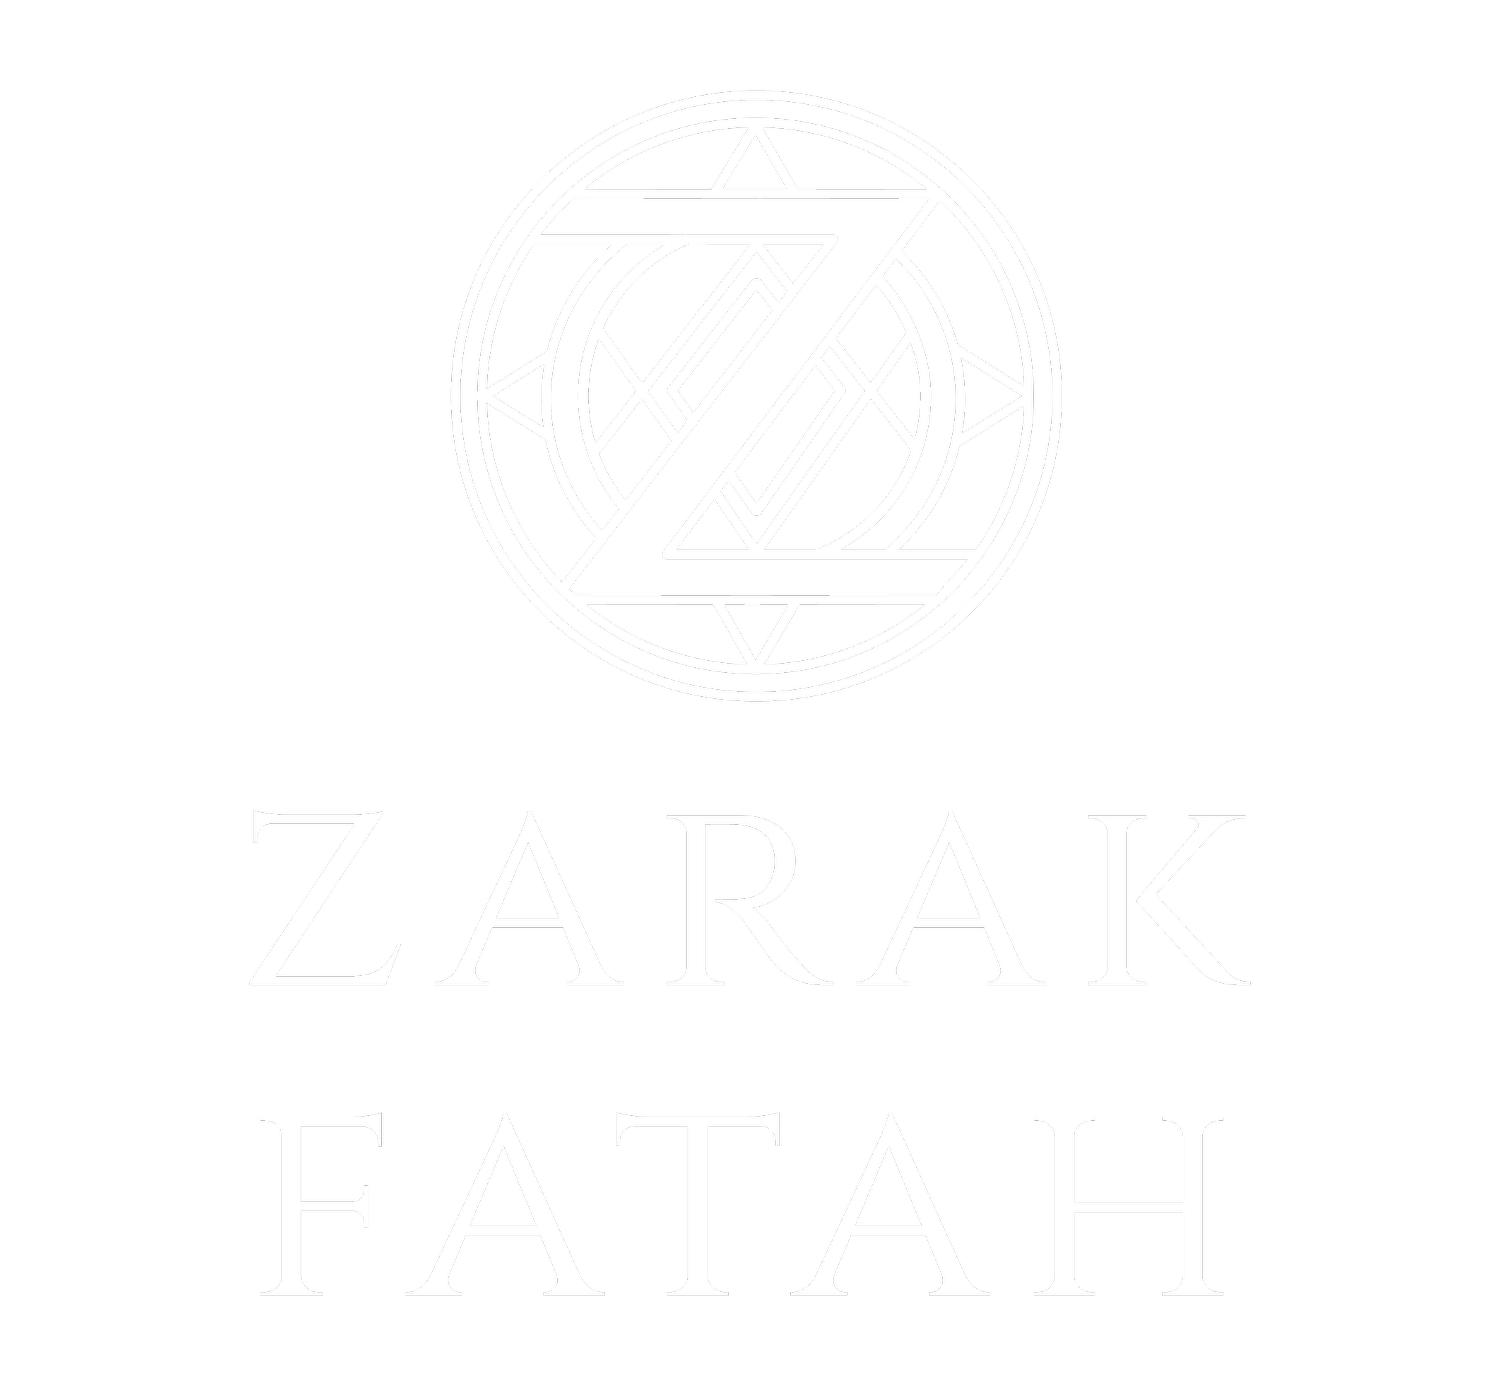 Zarak Fatah